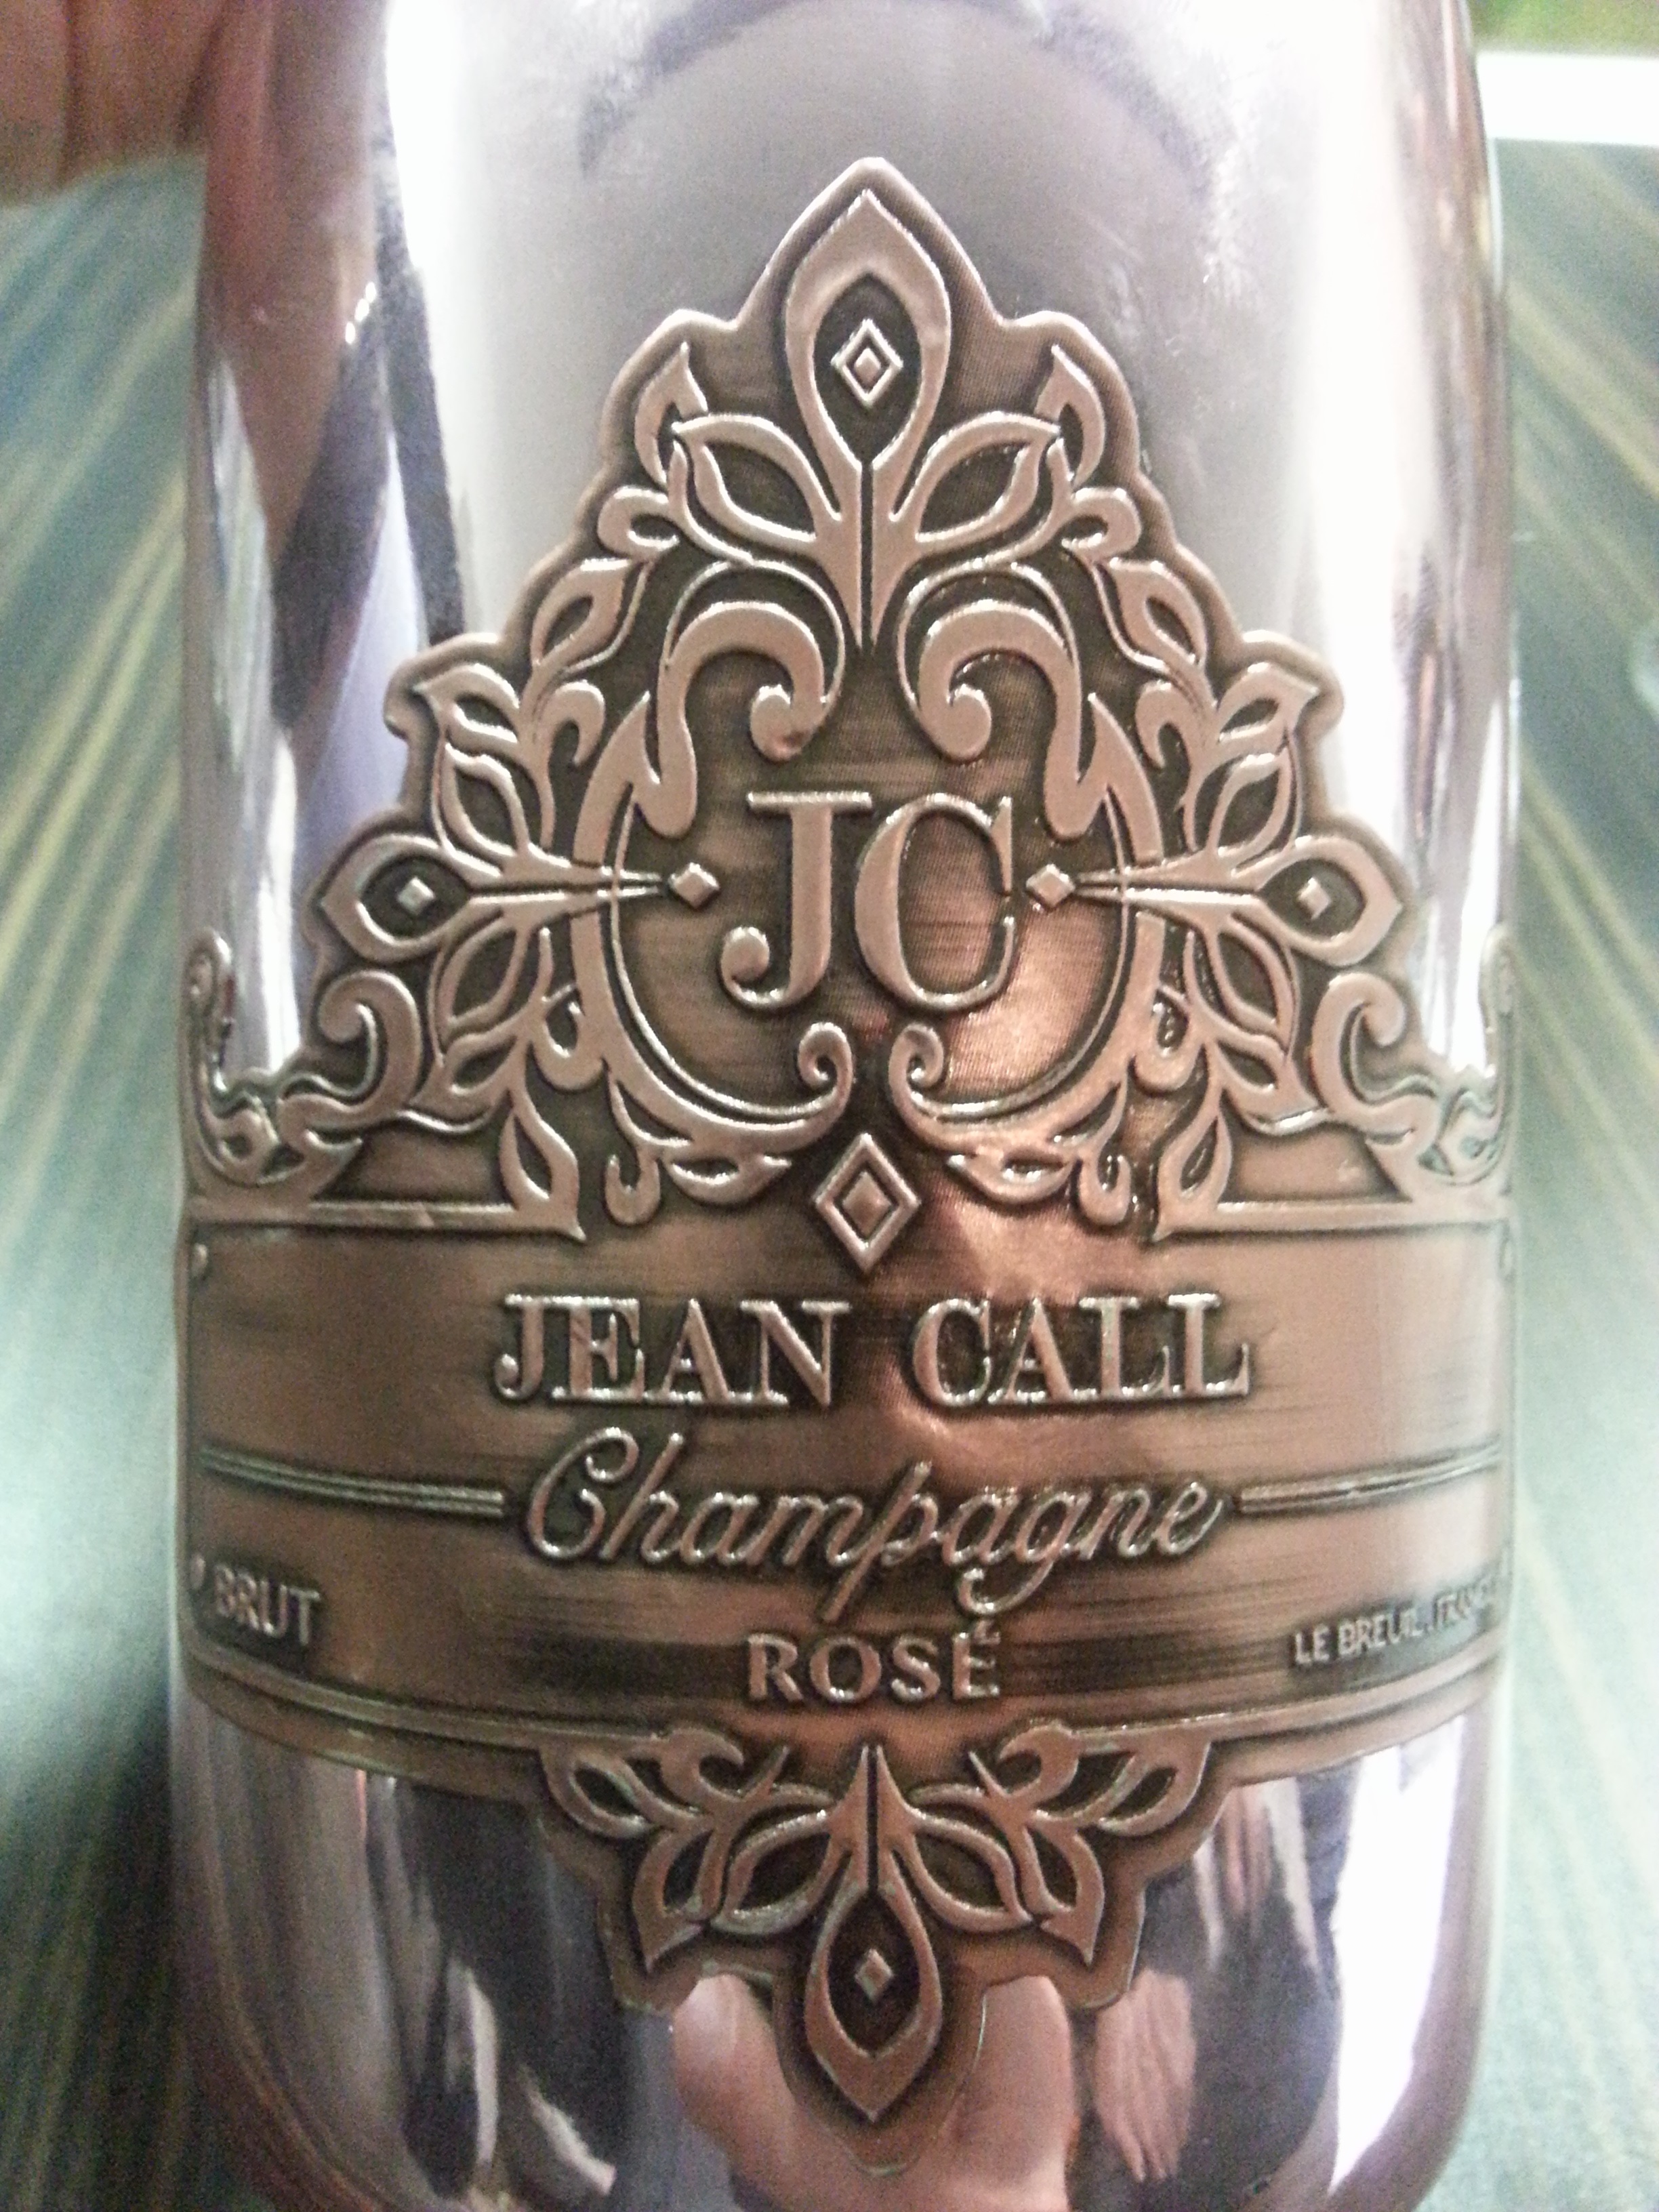 -nv- Champagne Rosé Brut | Jean Call